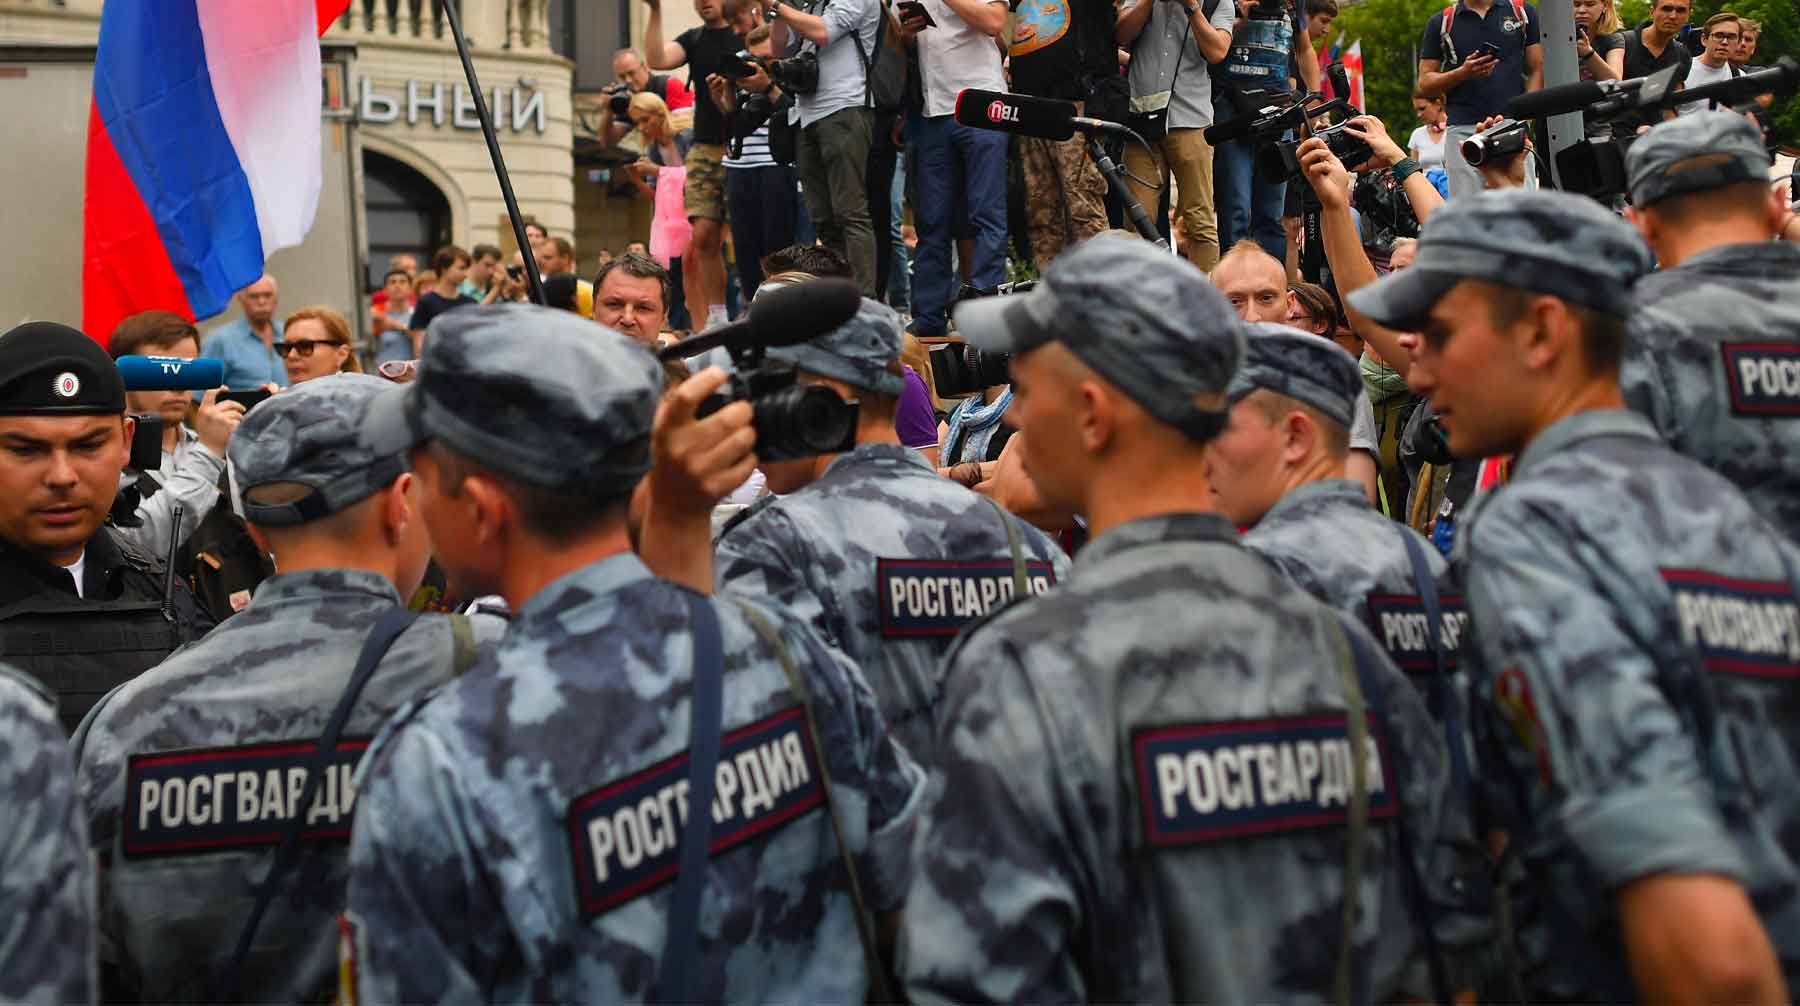 Оскорбительные сообщения с призывами не работать на митингах получили правоохранители в Санкт-Петербурге Фото: © GLOBAL LOOK press / Komsomolskaya Pravda